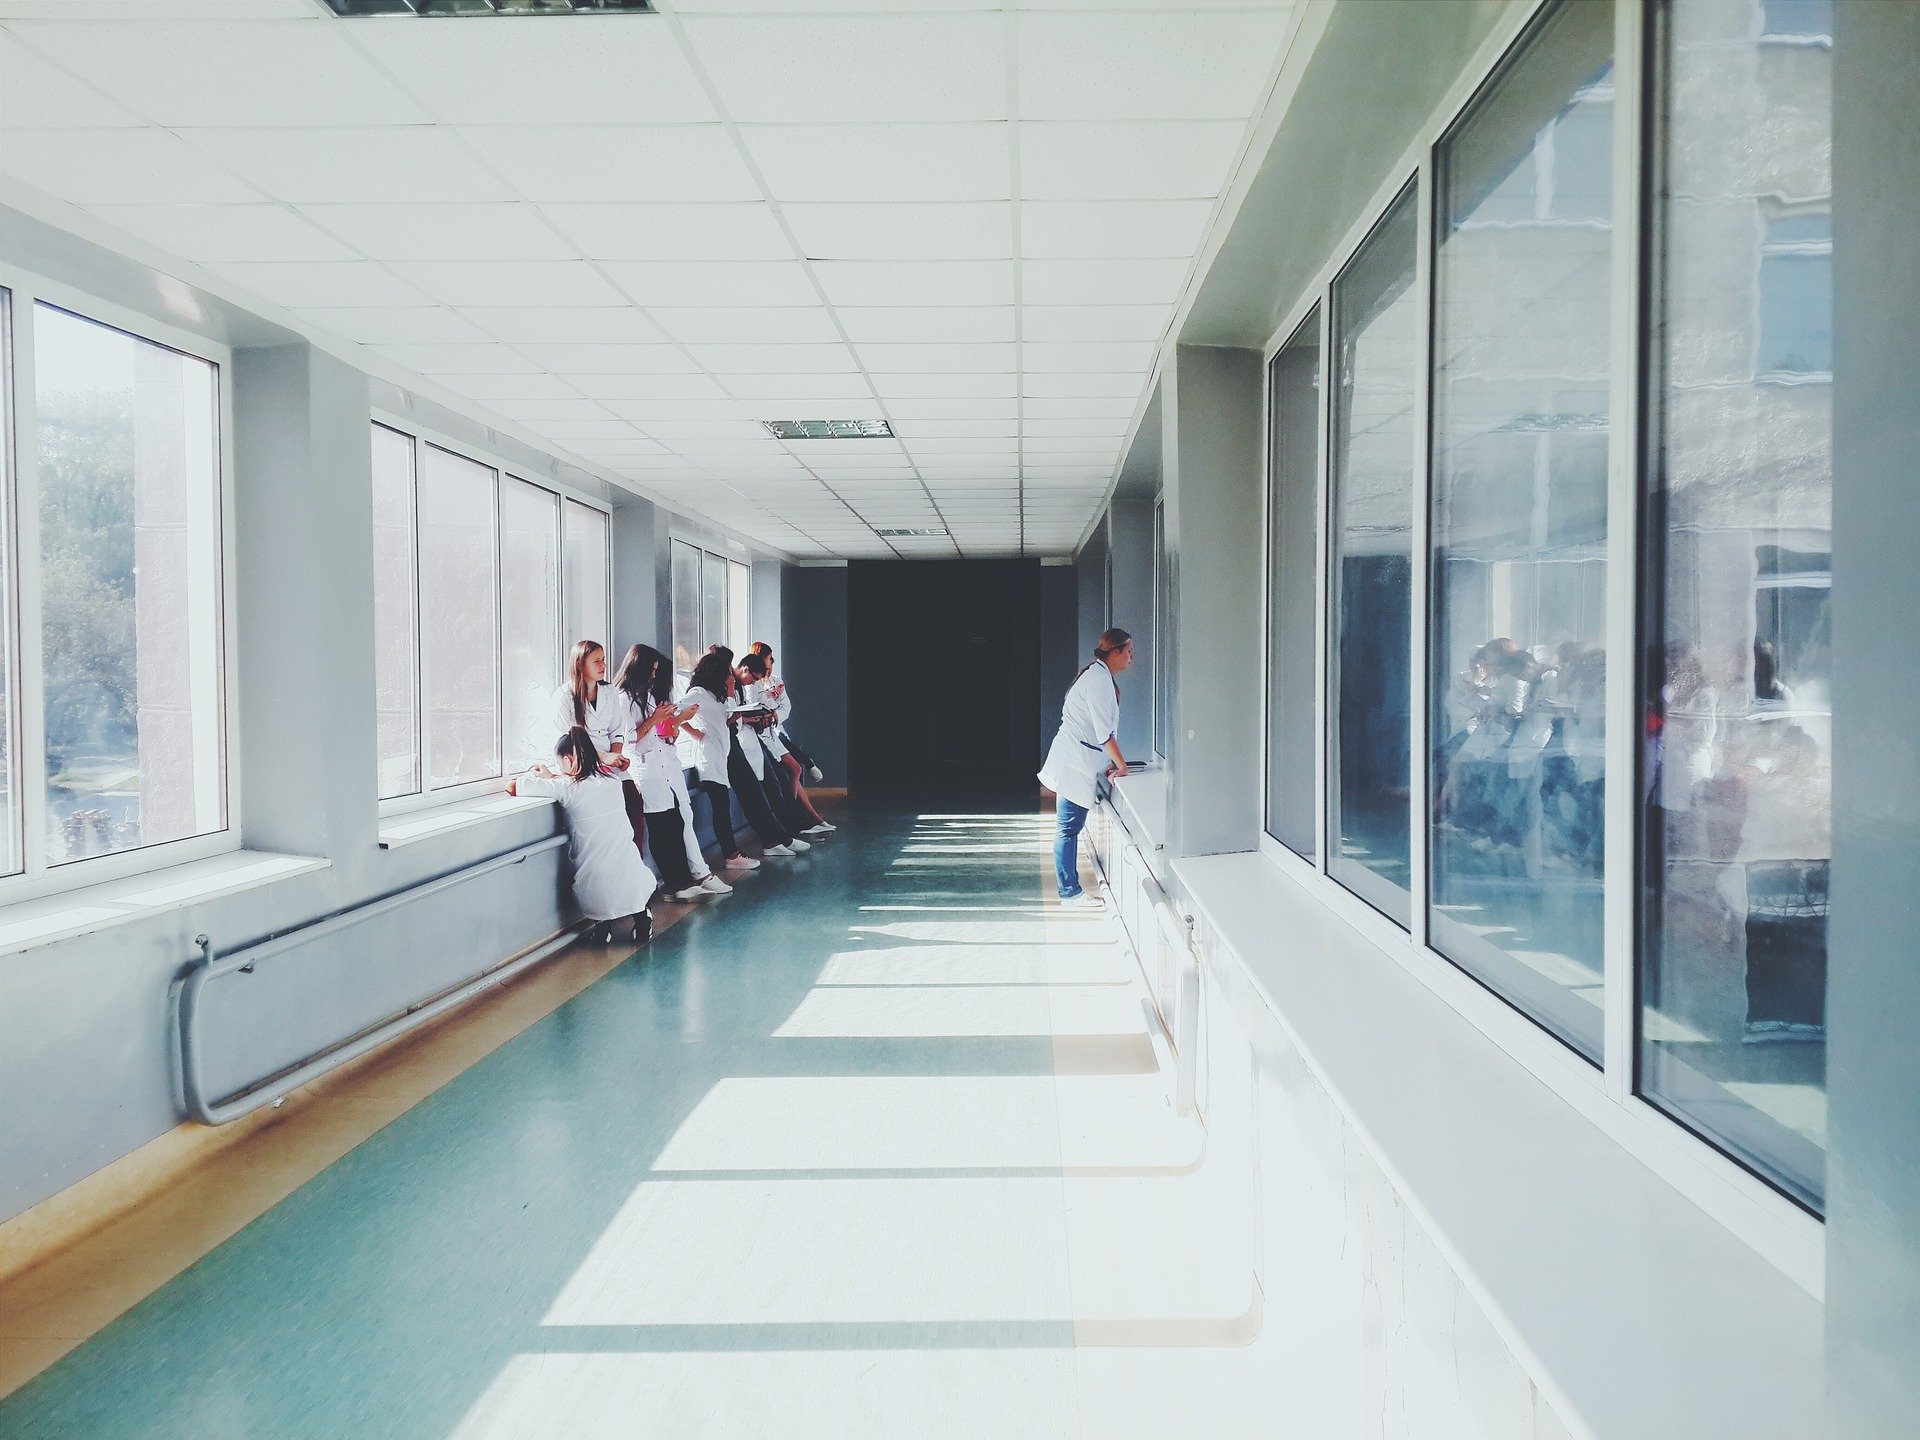 Krankenschwestern und -pfleger stehen auf dem Flur eines Krankenhauses. | Quelle: Pixabay